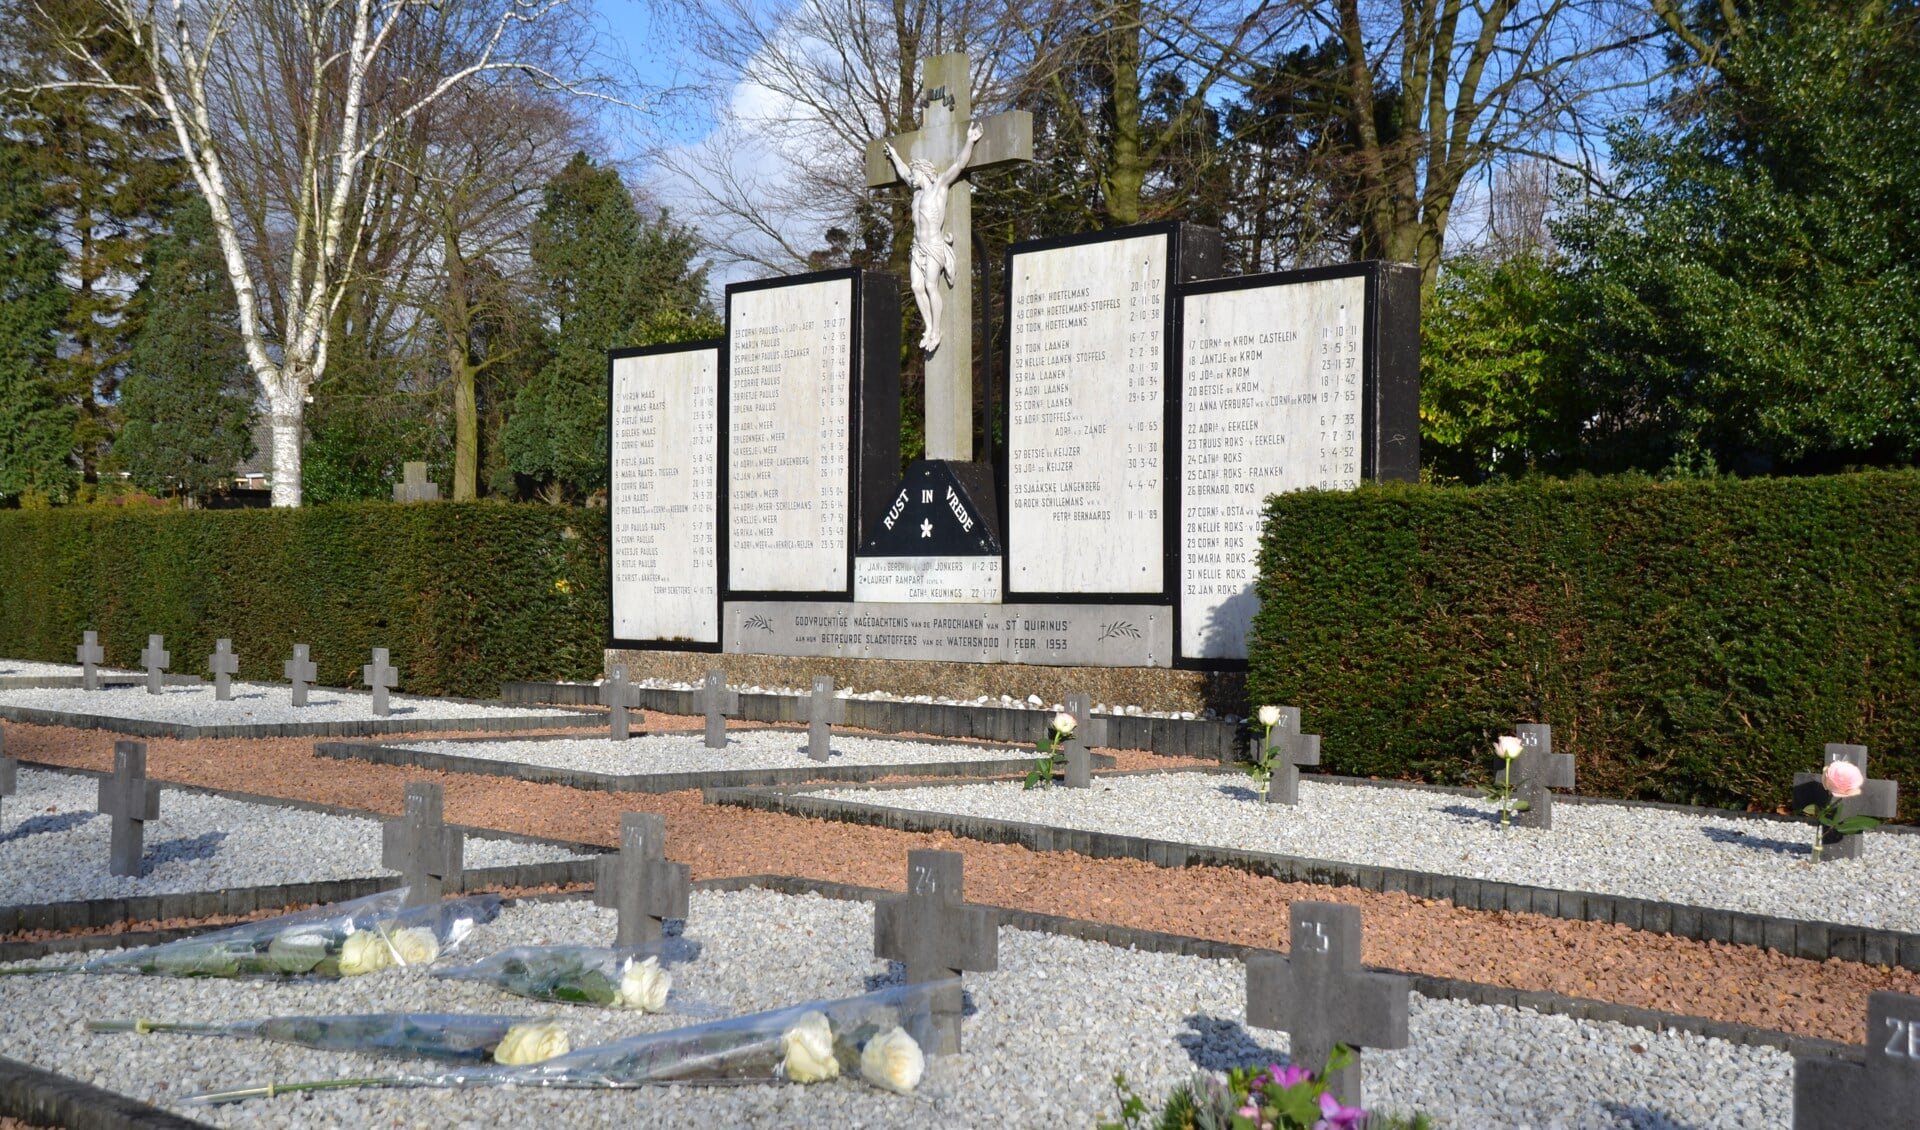 RK begraafplaats in Halsteren met graven van slachtoffers van de watersnoodramp in 1953. 